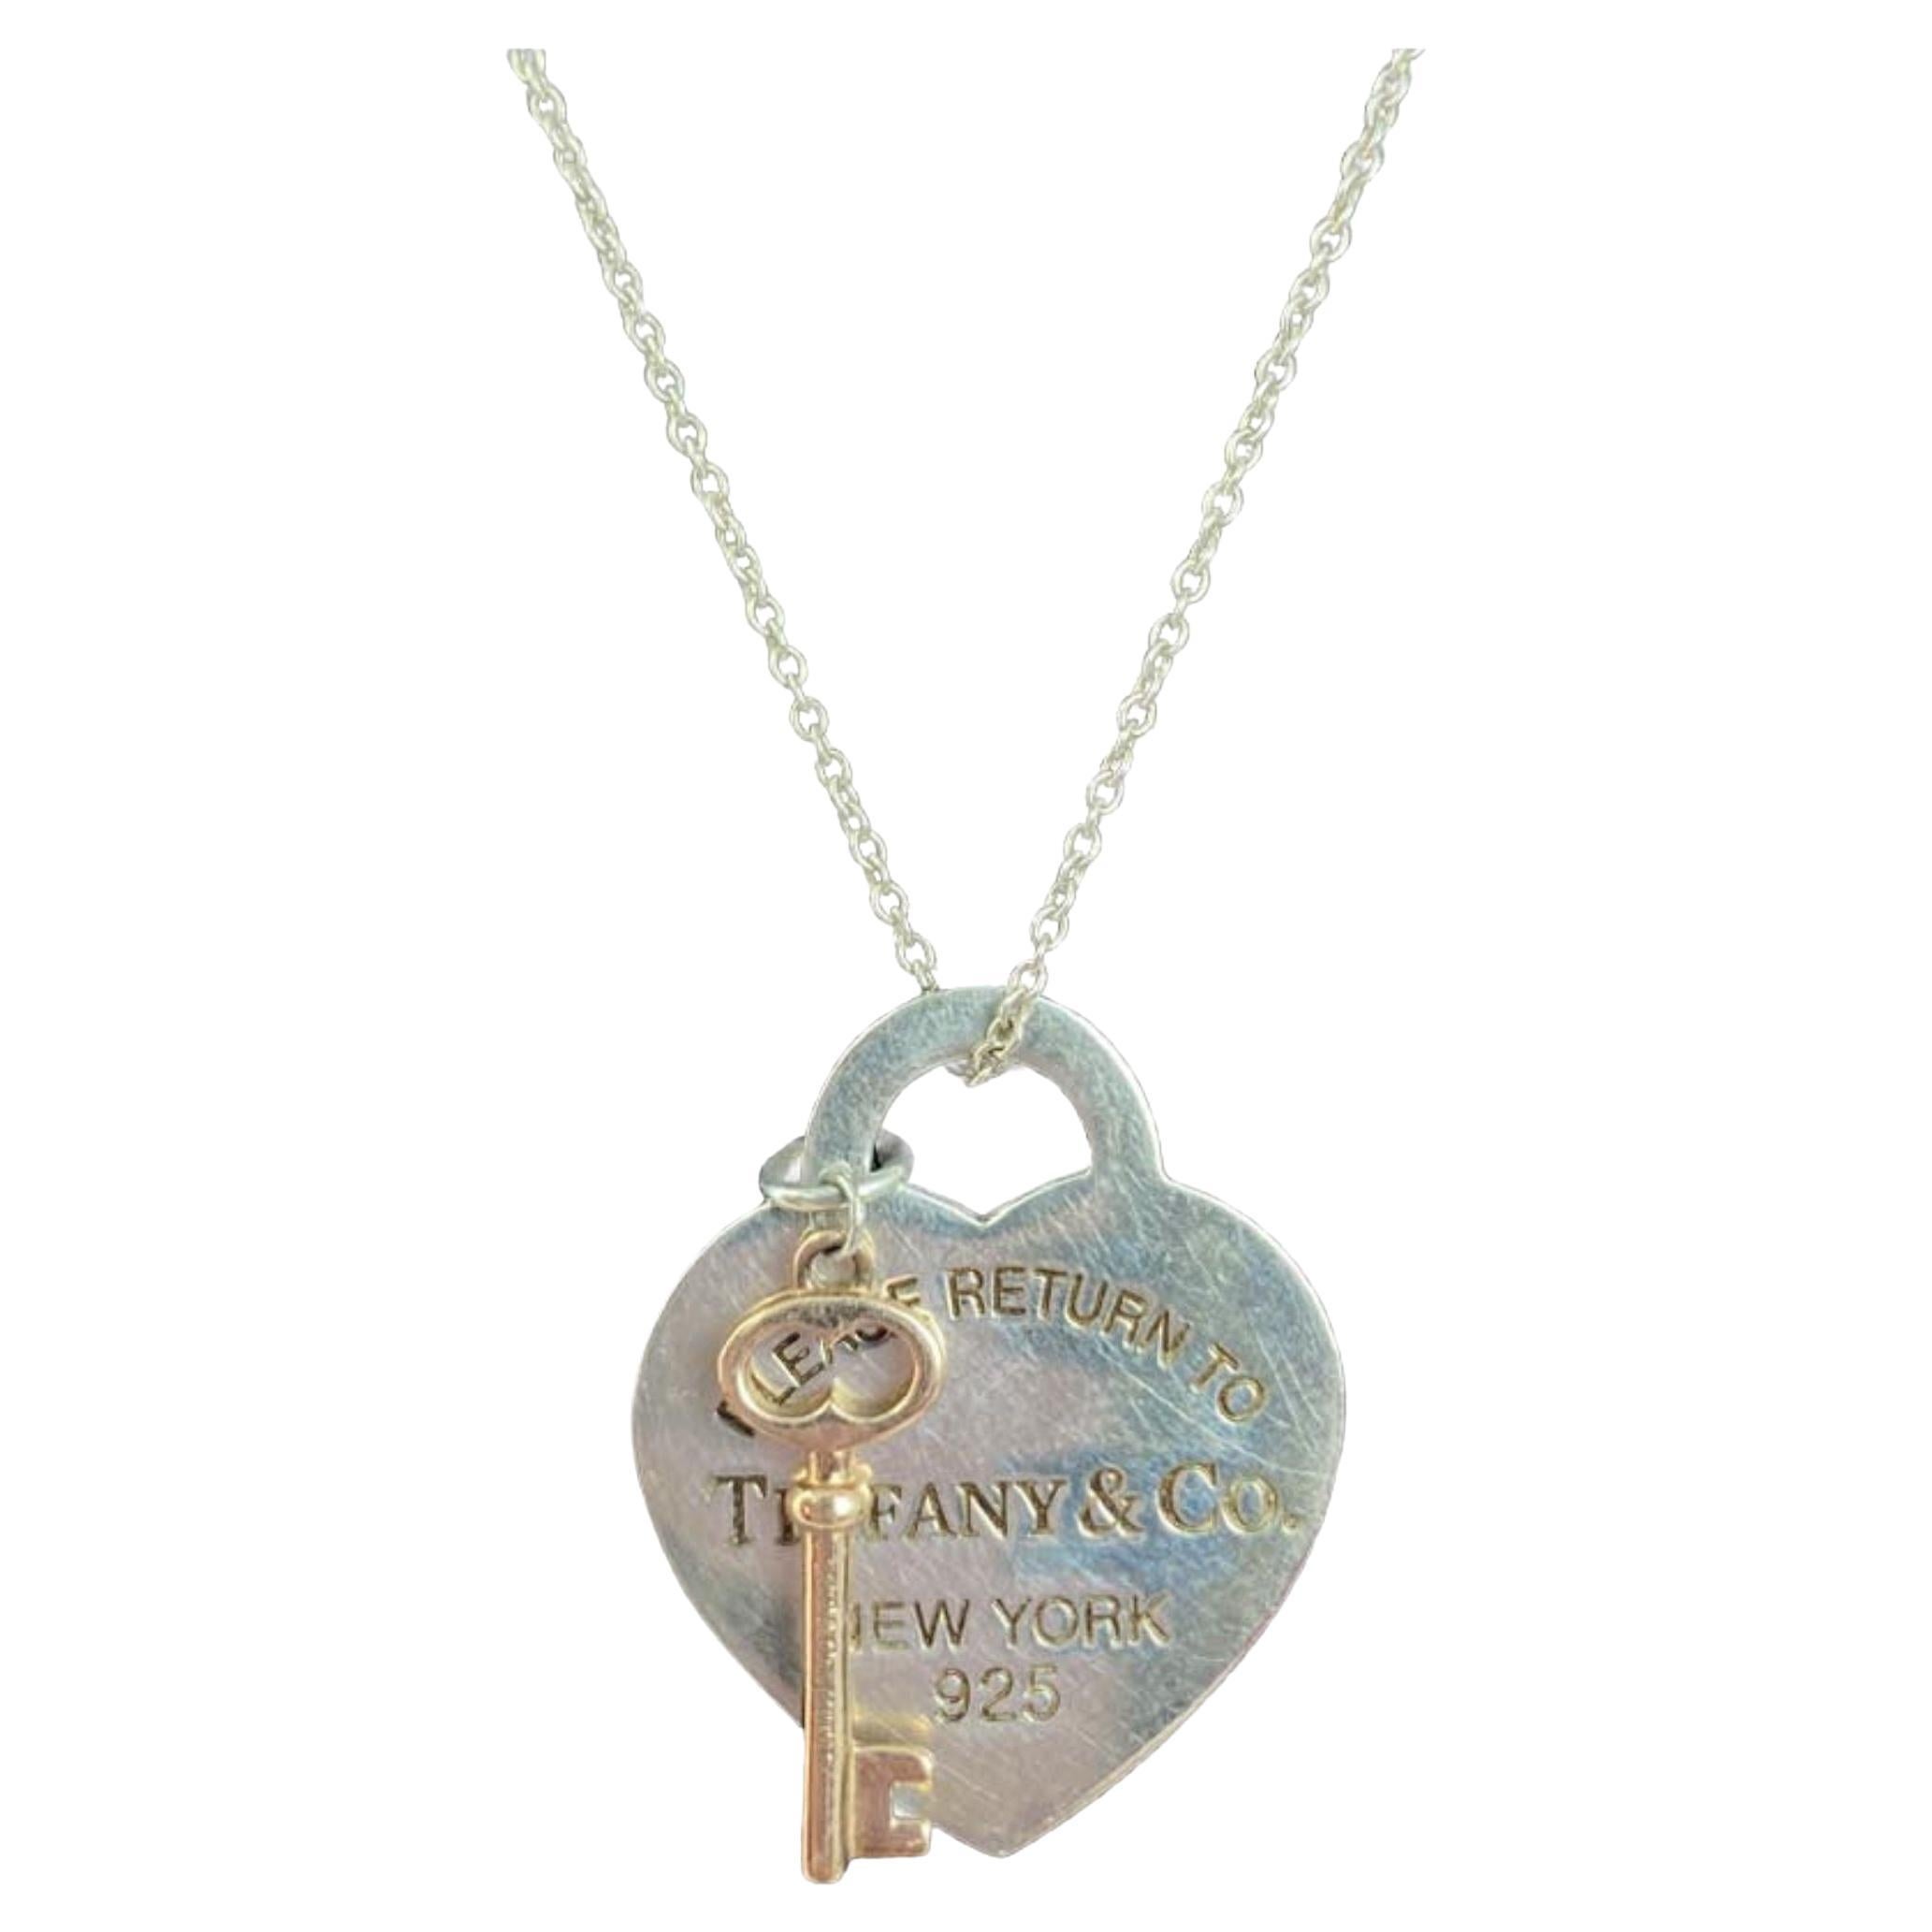 Tiffany & Co. Return To Tiffany Heart Pendant Necklace